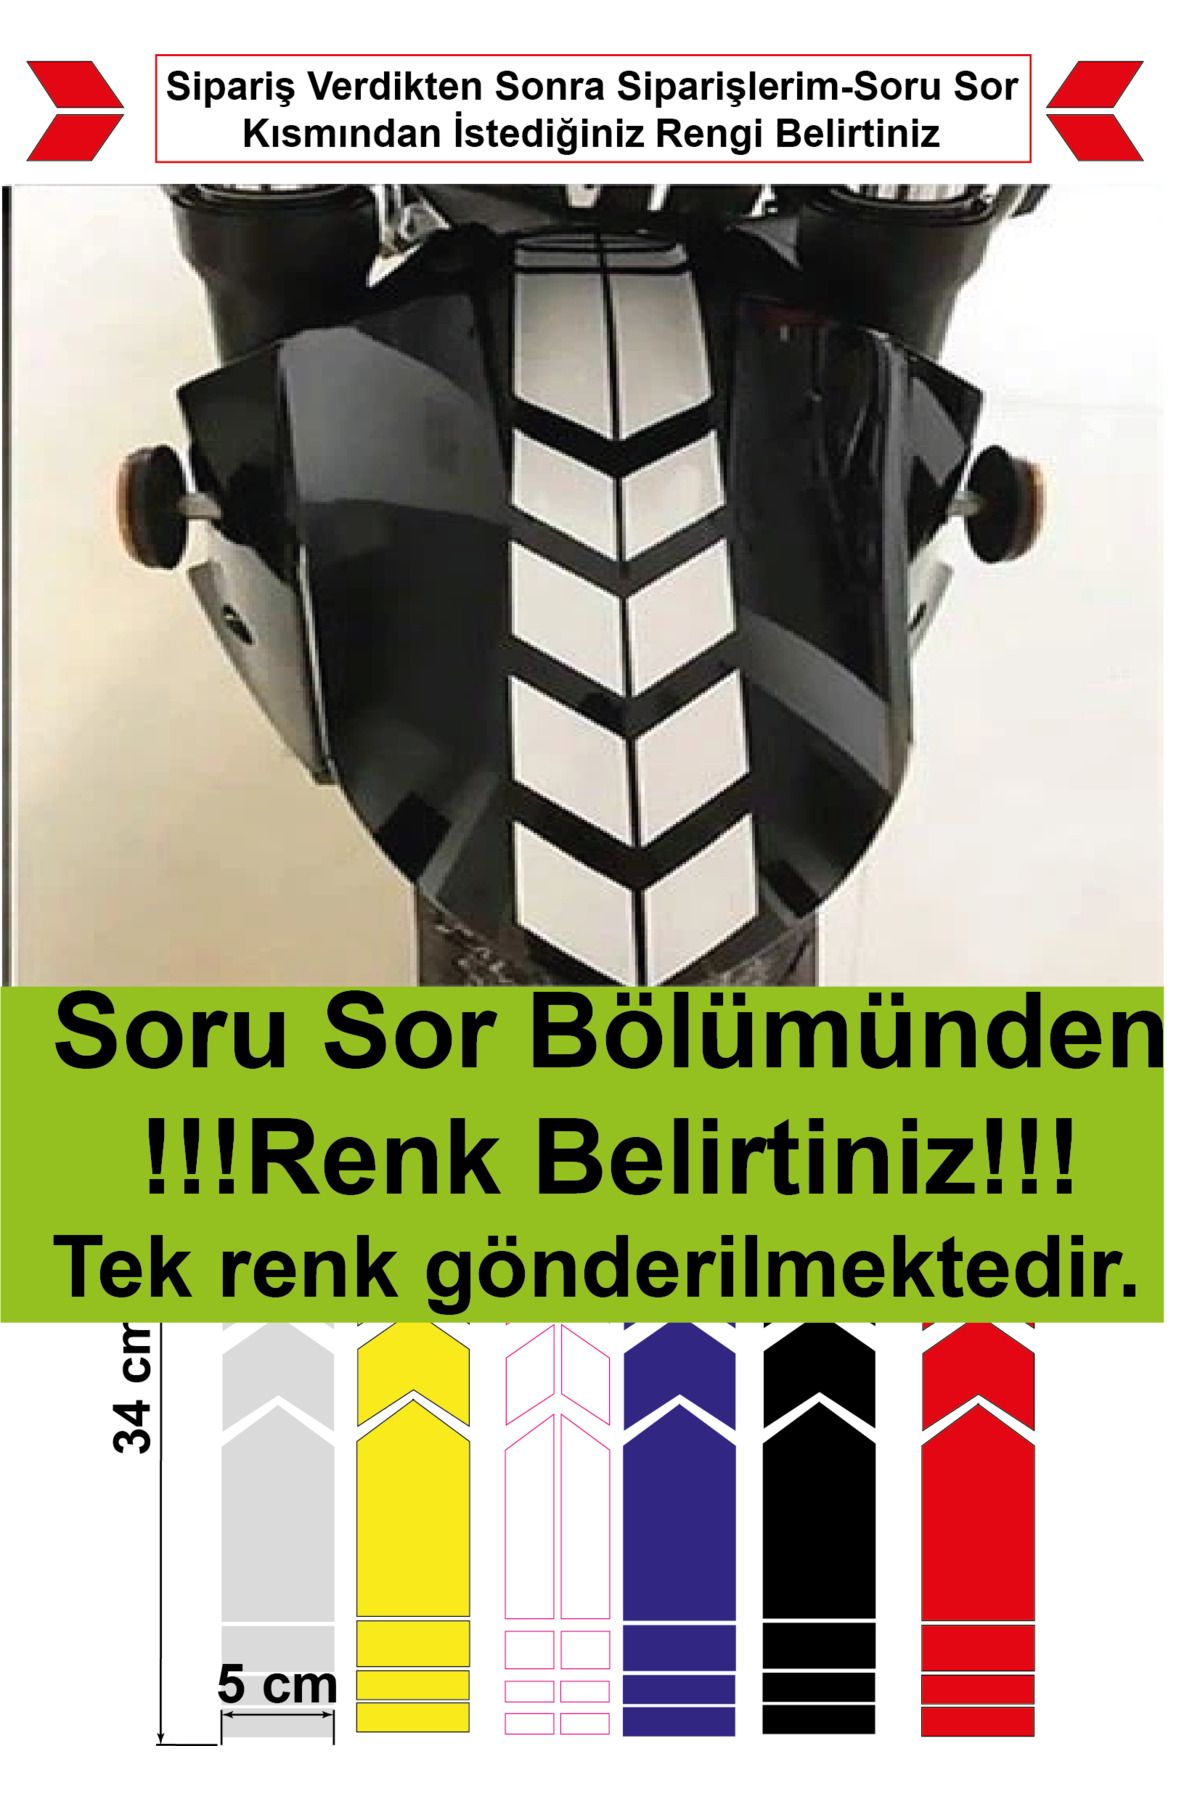 Ayza Tasarım Motosiklet Çamurluk Sticker (SORU SOR KISMINDAN RENK BELİRTİNİZ)